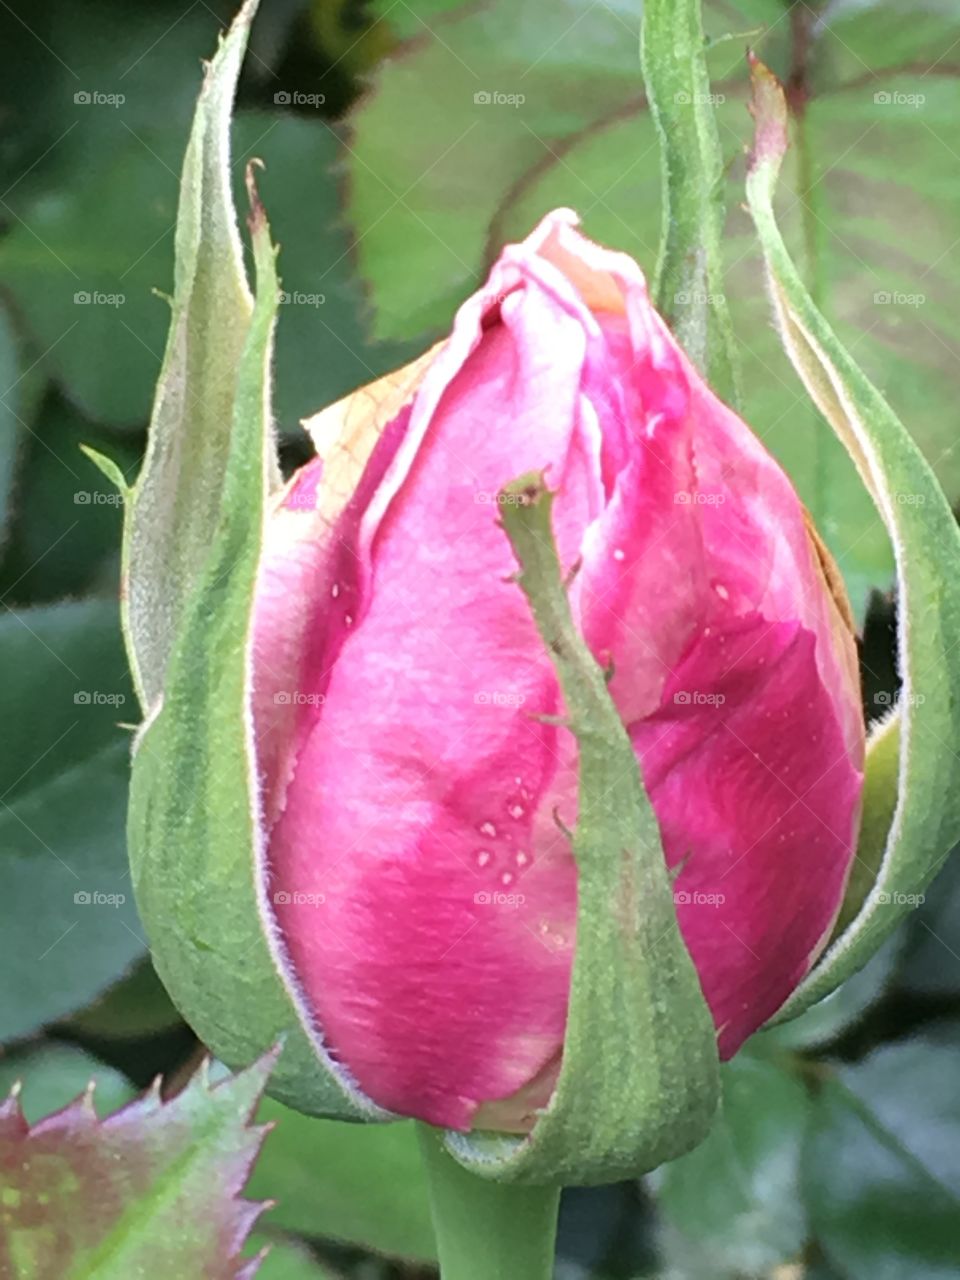 Budding rose